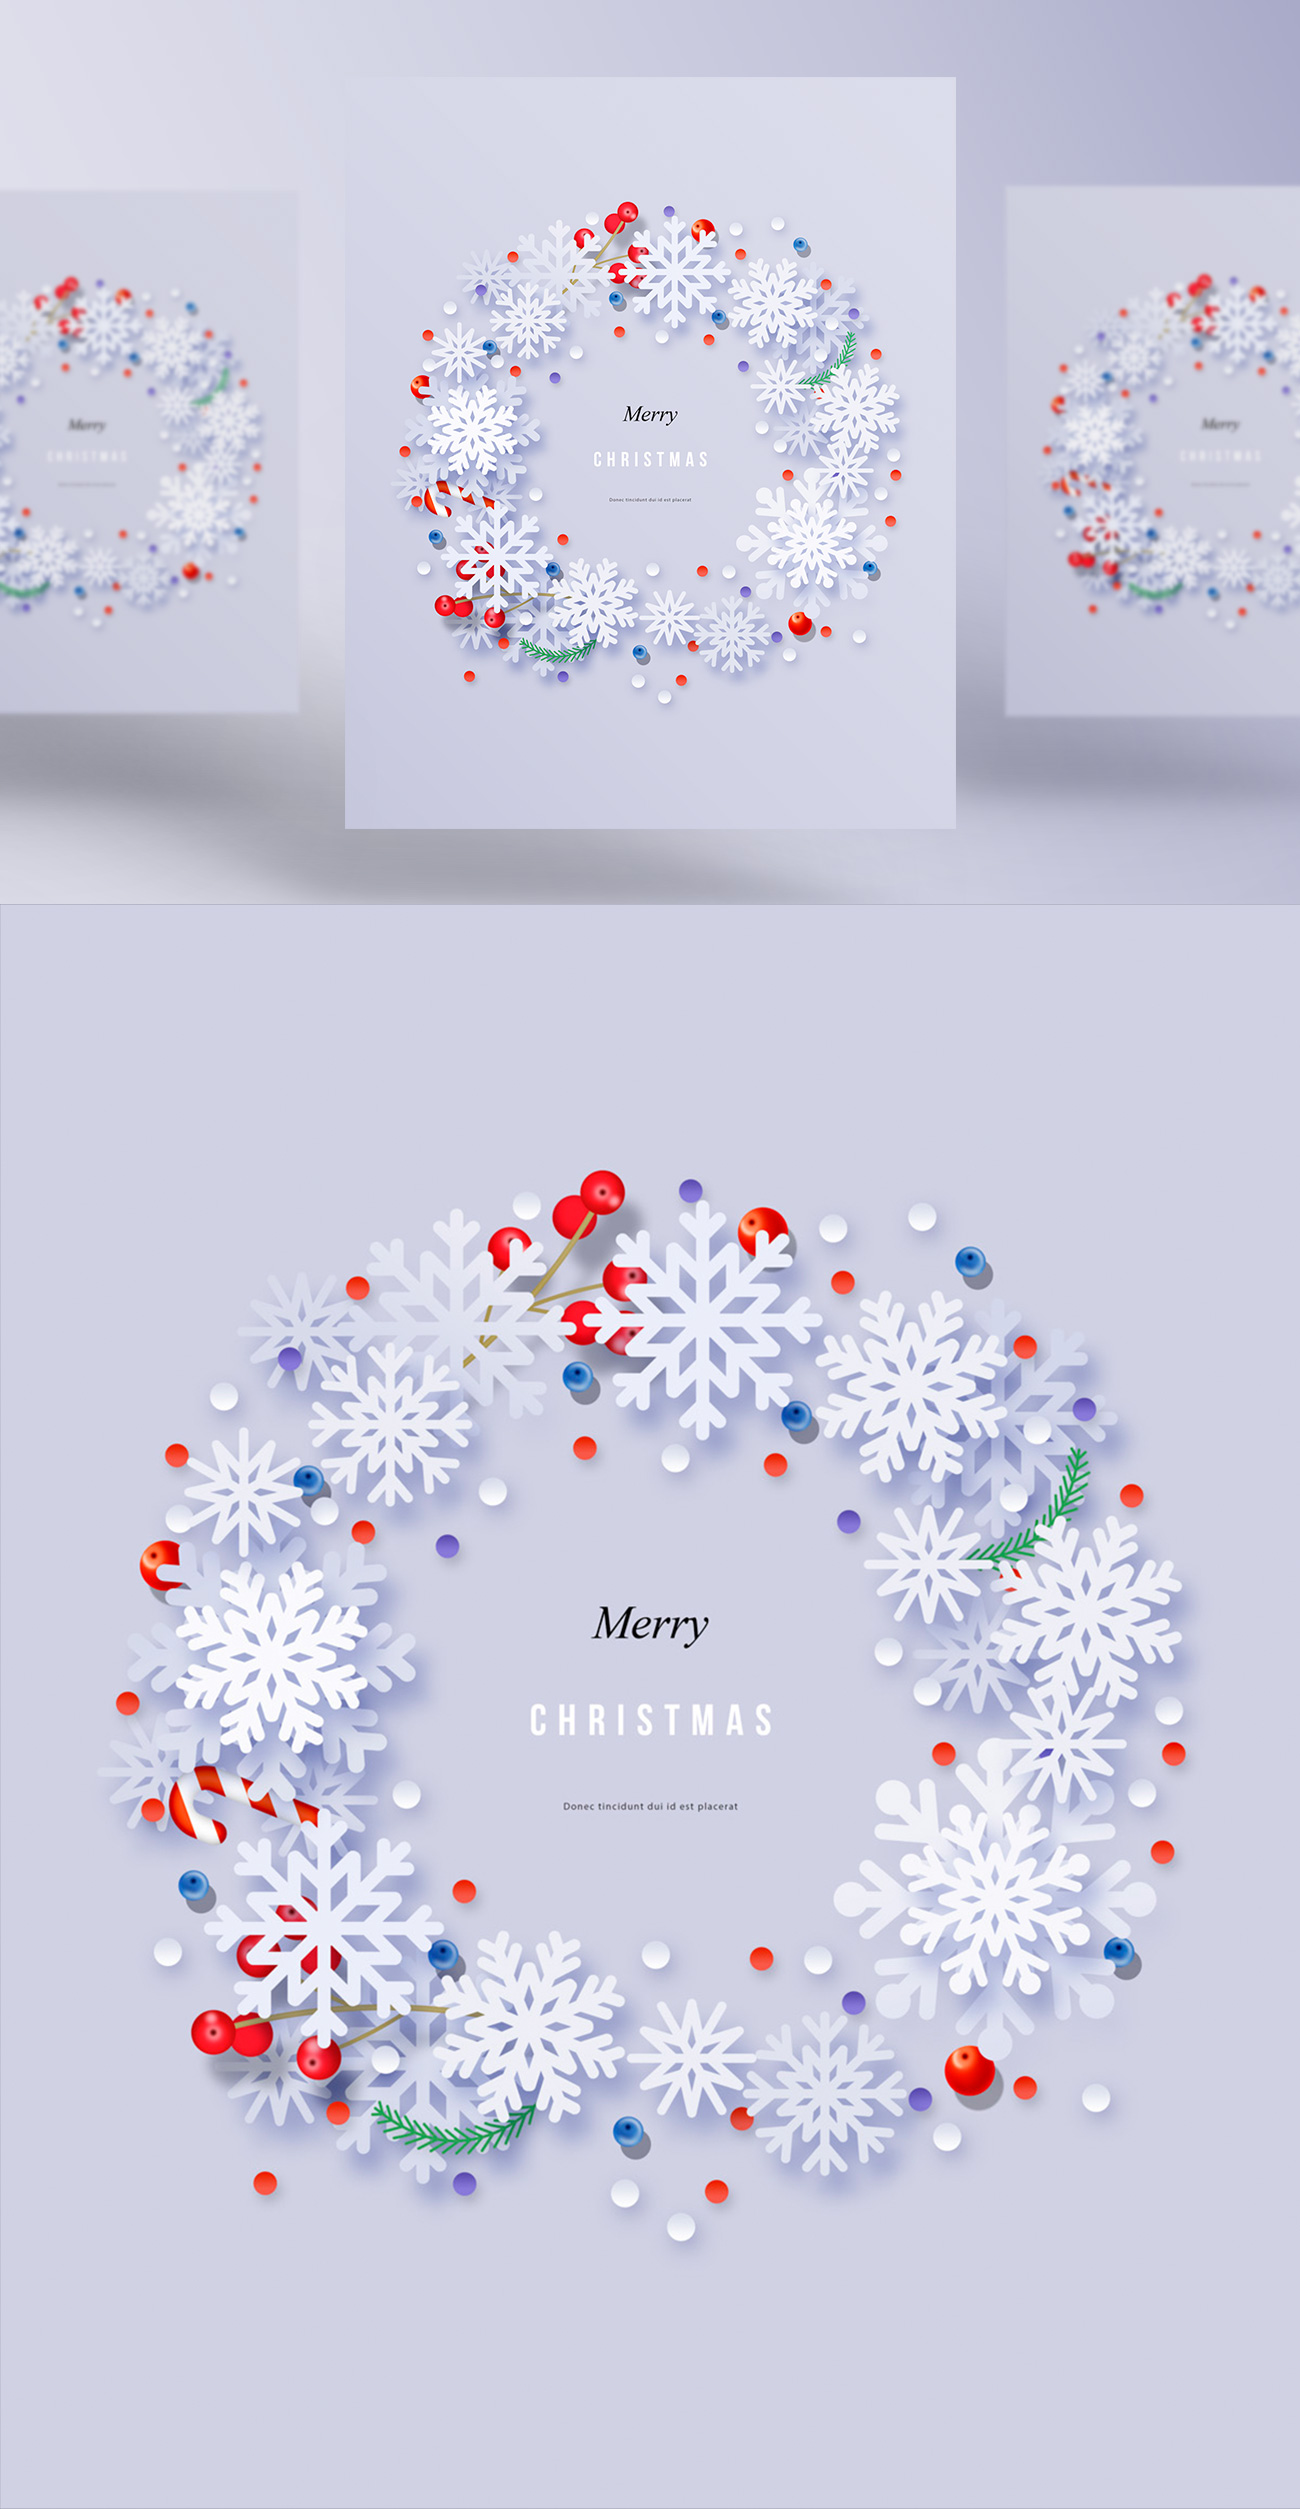 极简主义圣诞节概念促销宣传海报PSD模板